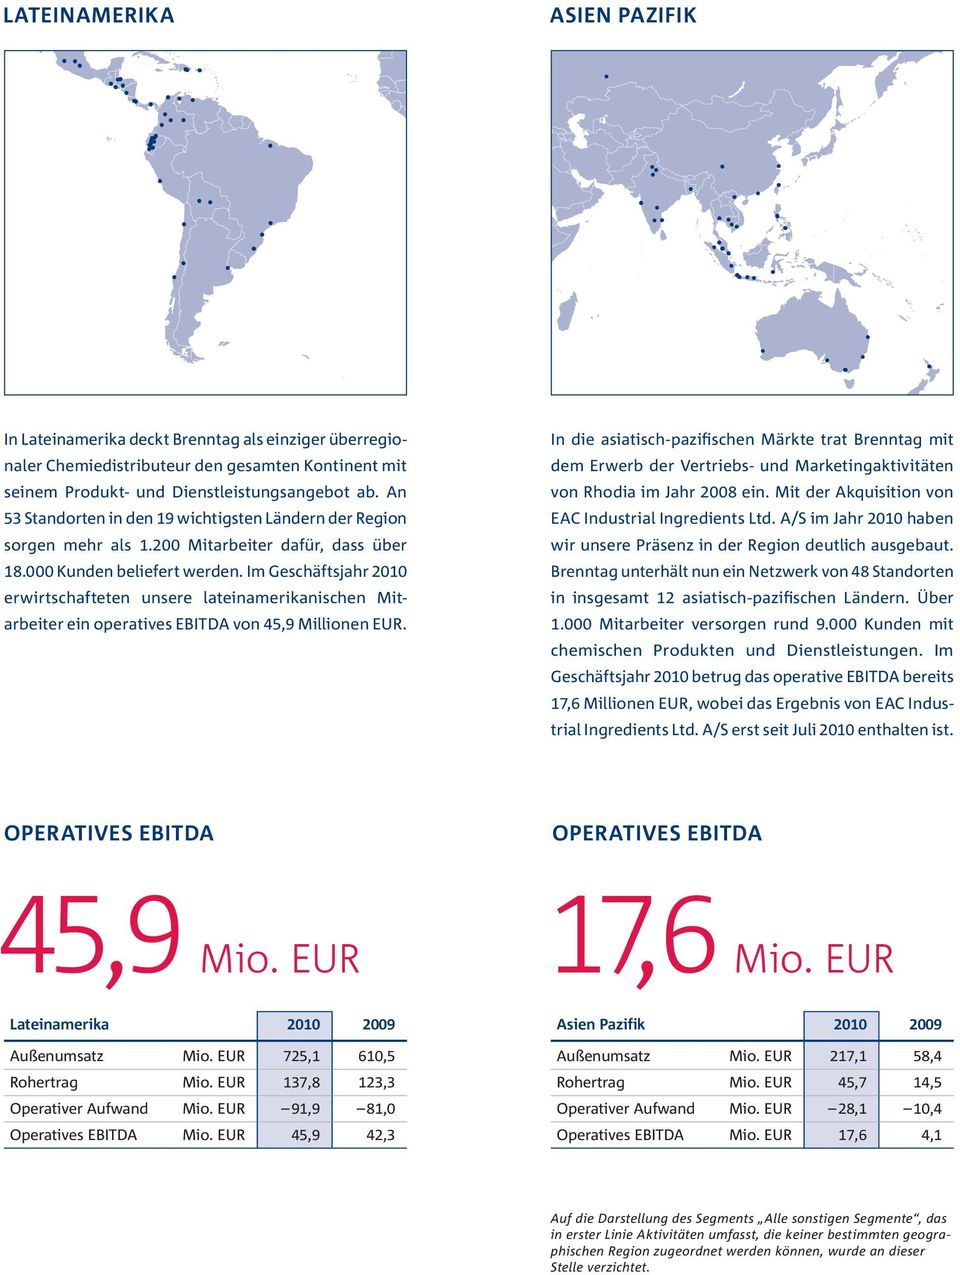 Im Geschäftsjahr 2010 erwirtschafteten unsere lateinamerikanischen Mitarbeiter ein operatives EBITDA von 45,9 Millionen EUR.